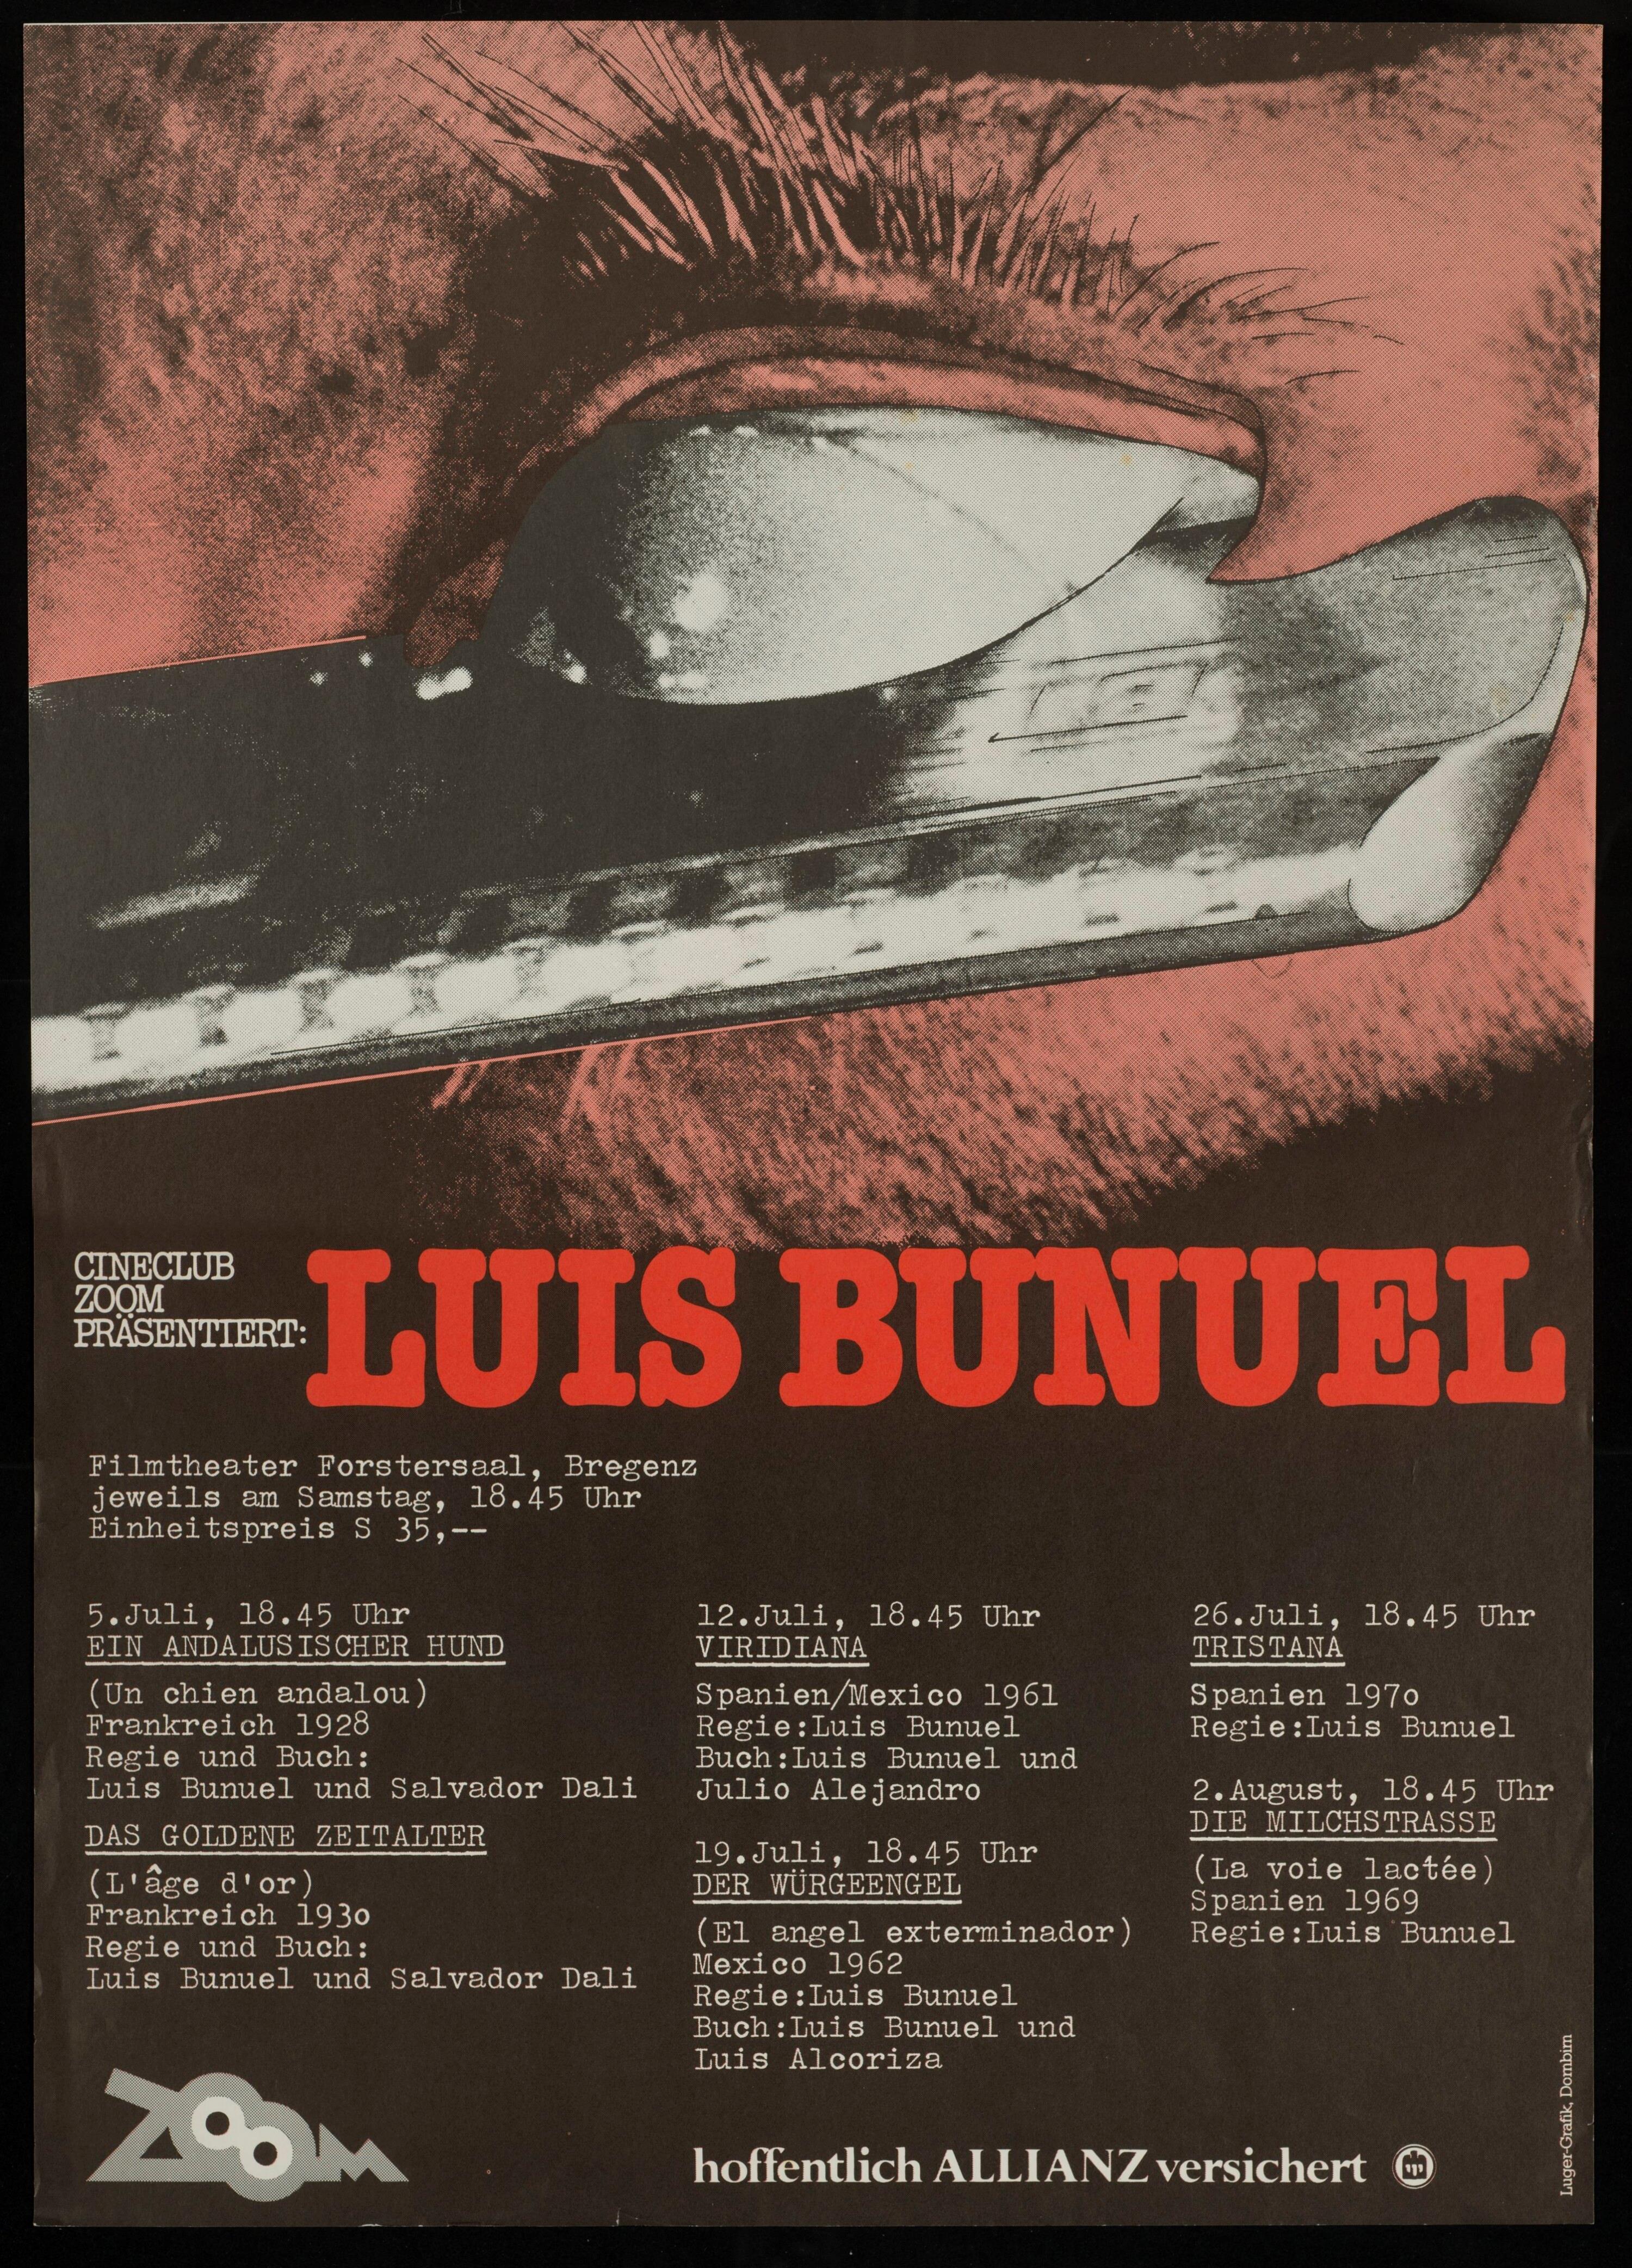 Cineclub Zoom präsentiert: Luis Bunuel></div>


    <hr>
    <div class=